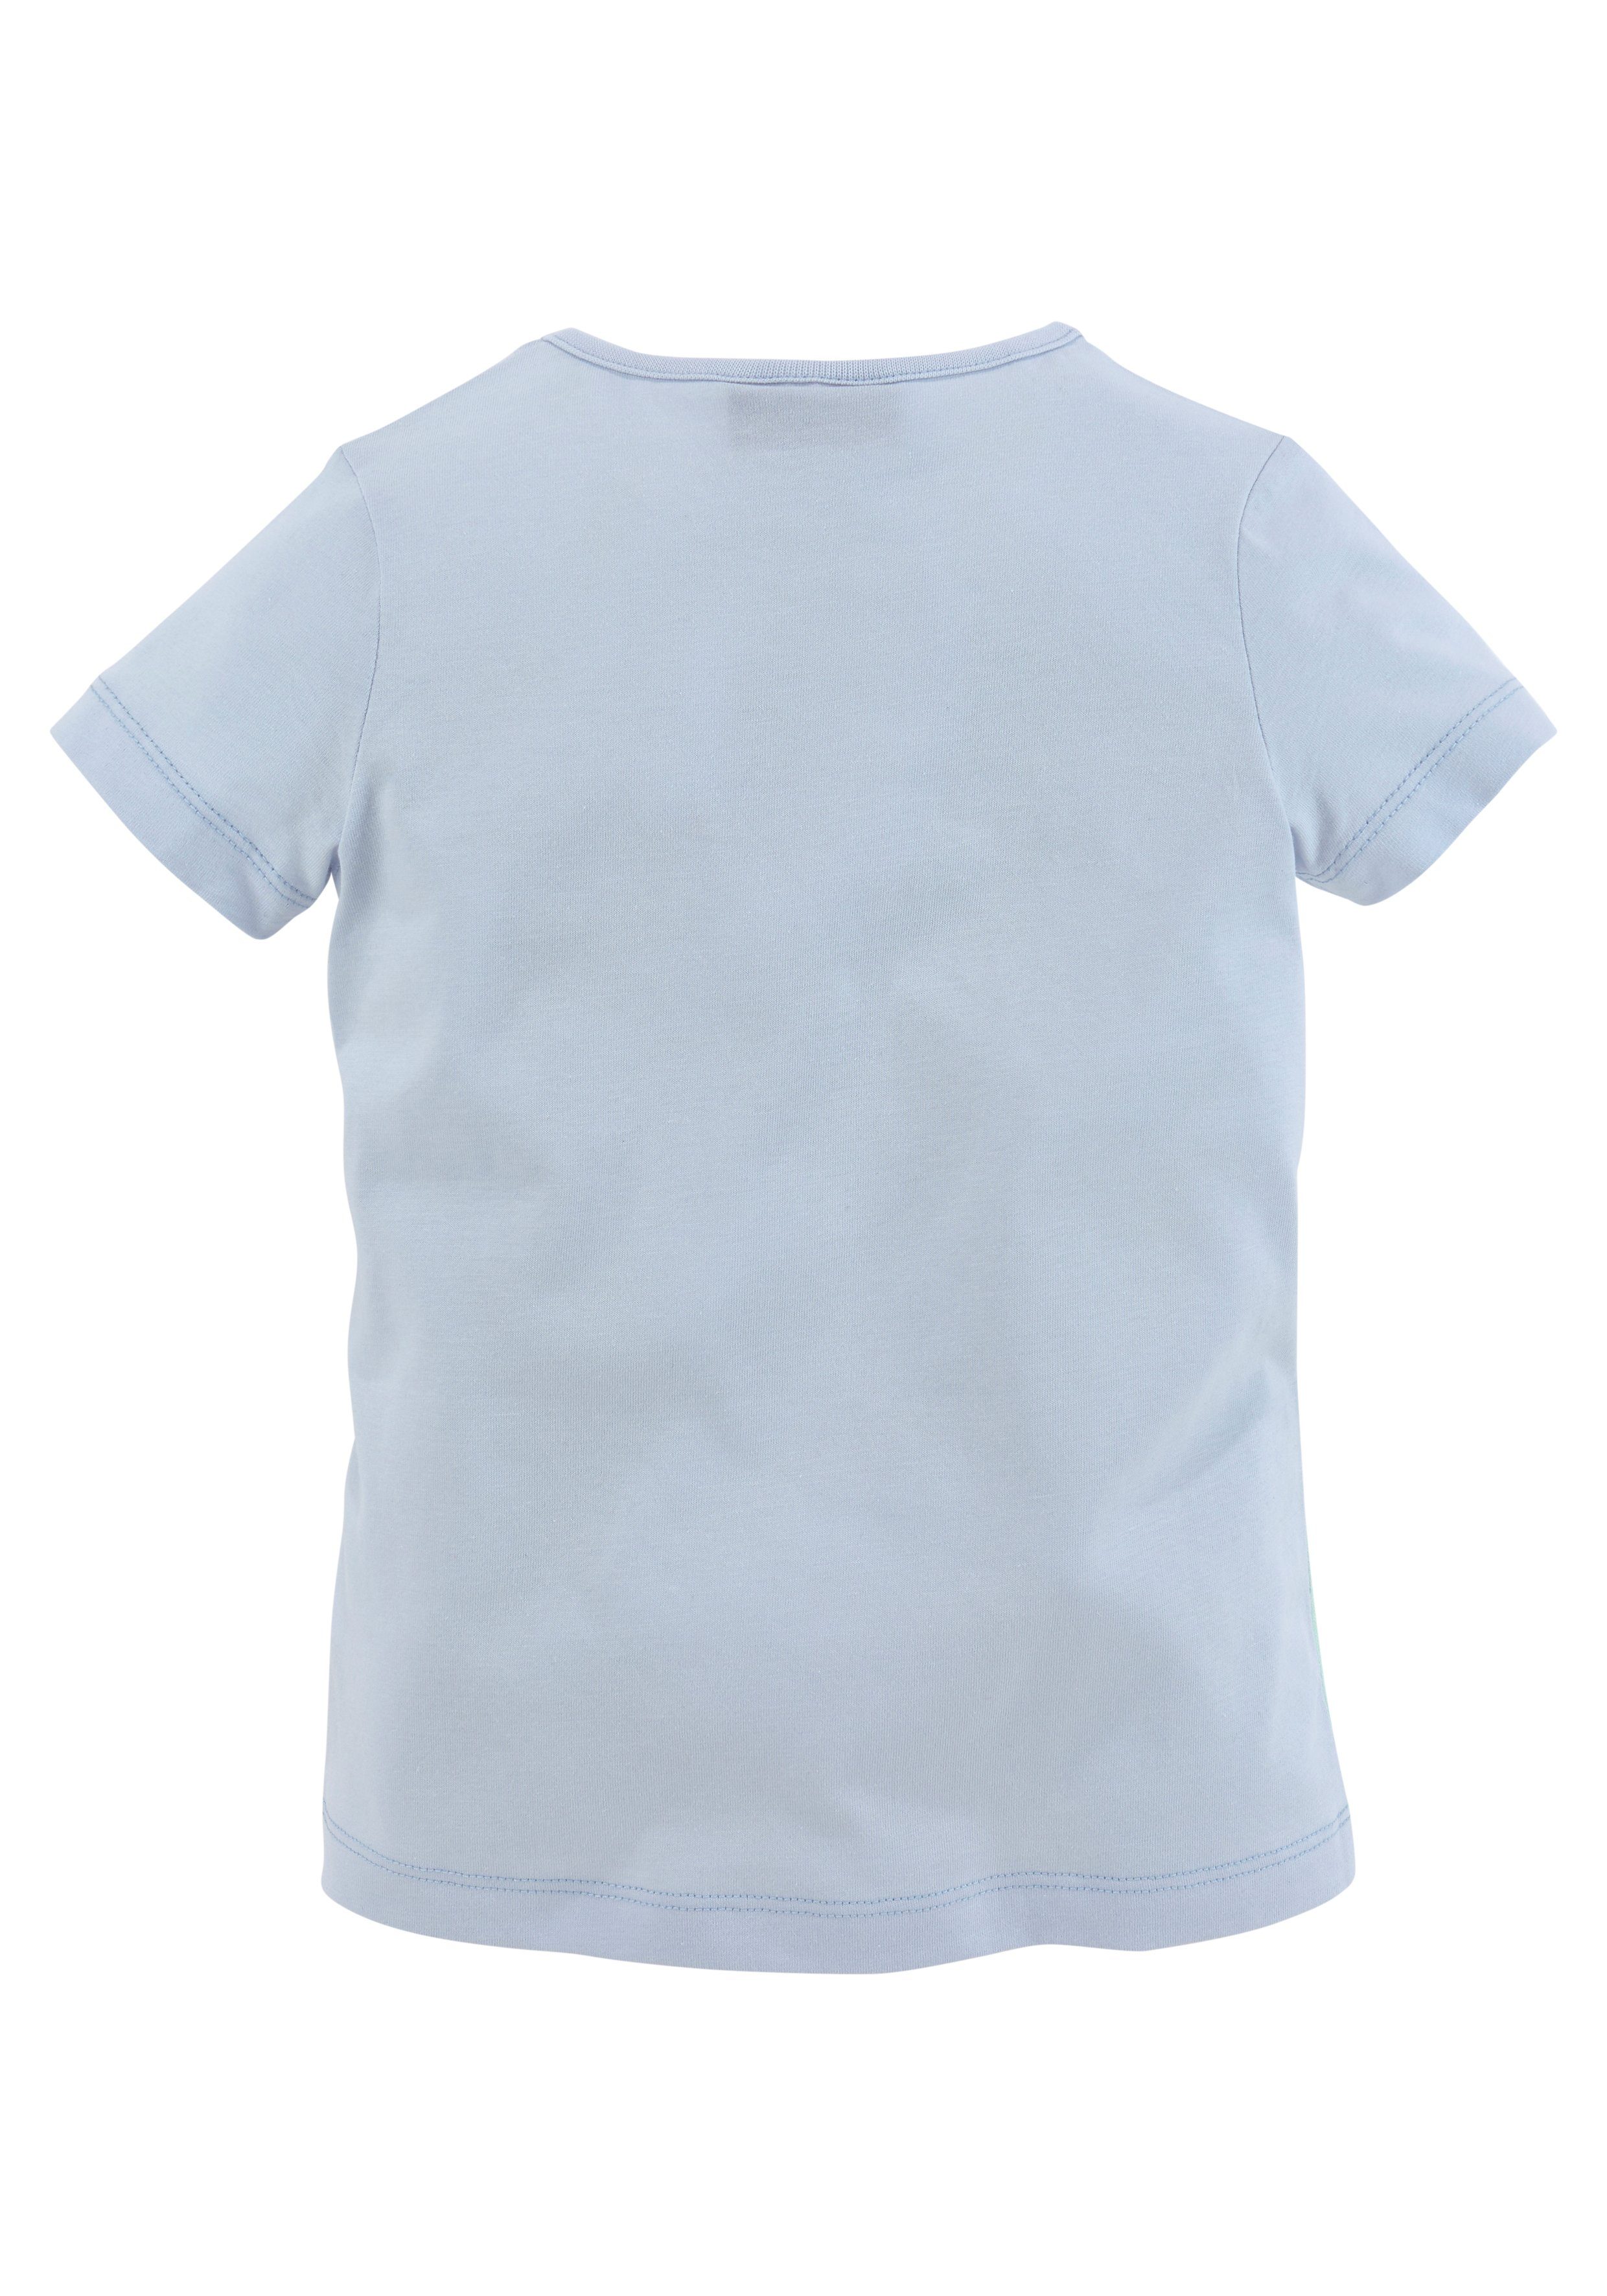 Melody Miss schönem T-Shirt Pferdemotiv mit hellblau